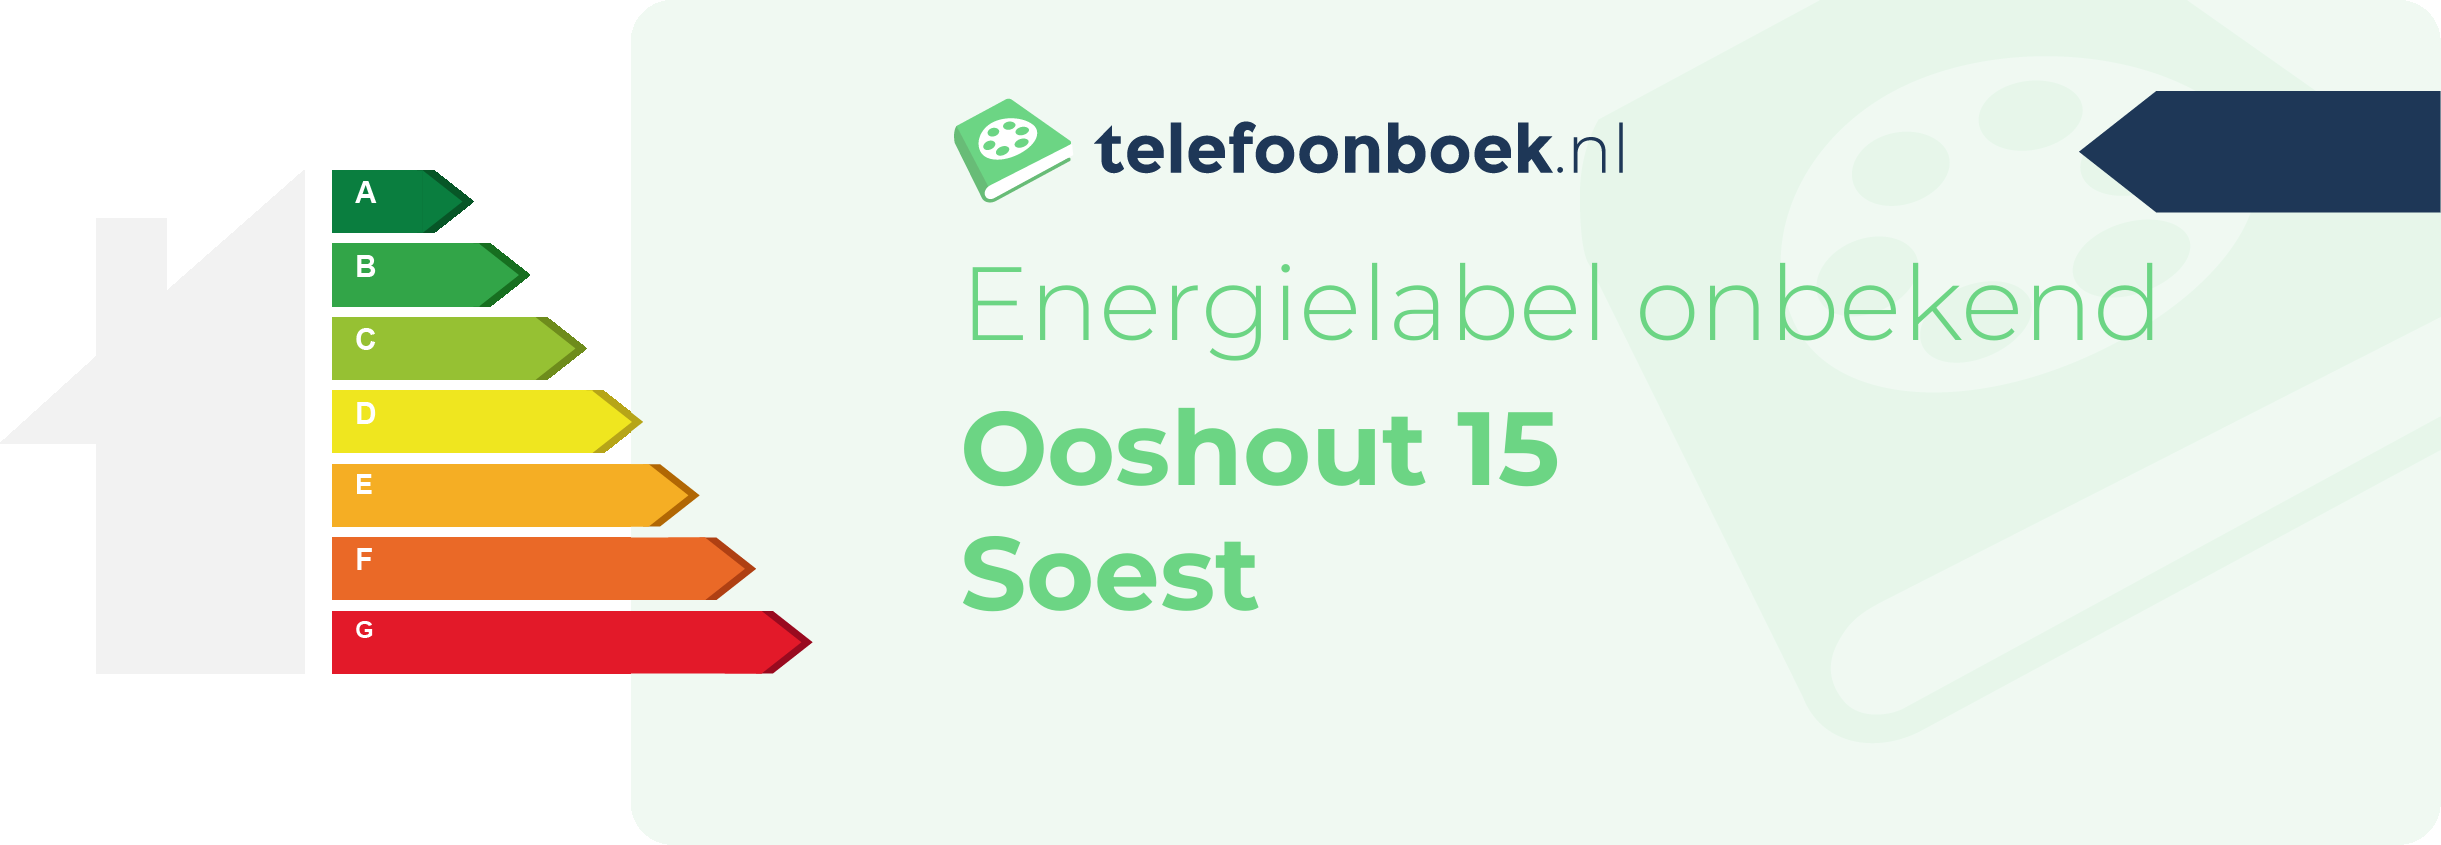 Energielabel Ooshout 15 Soest